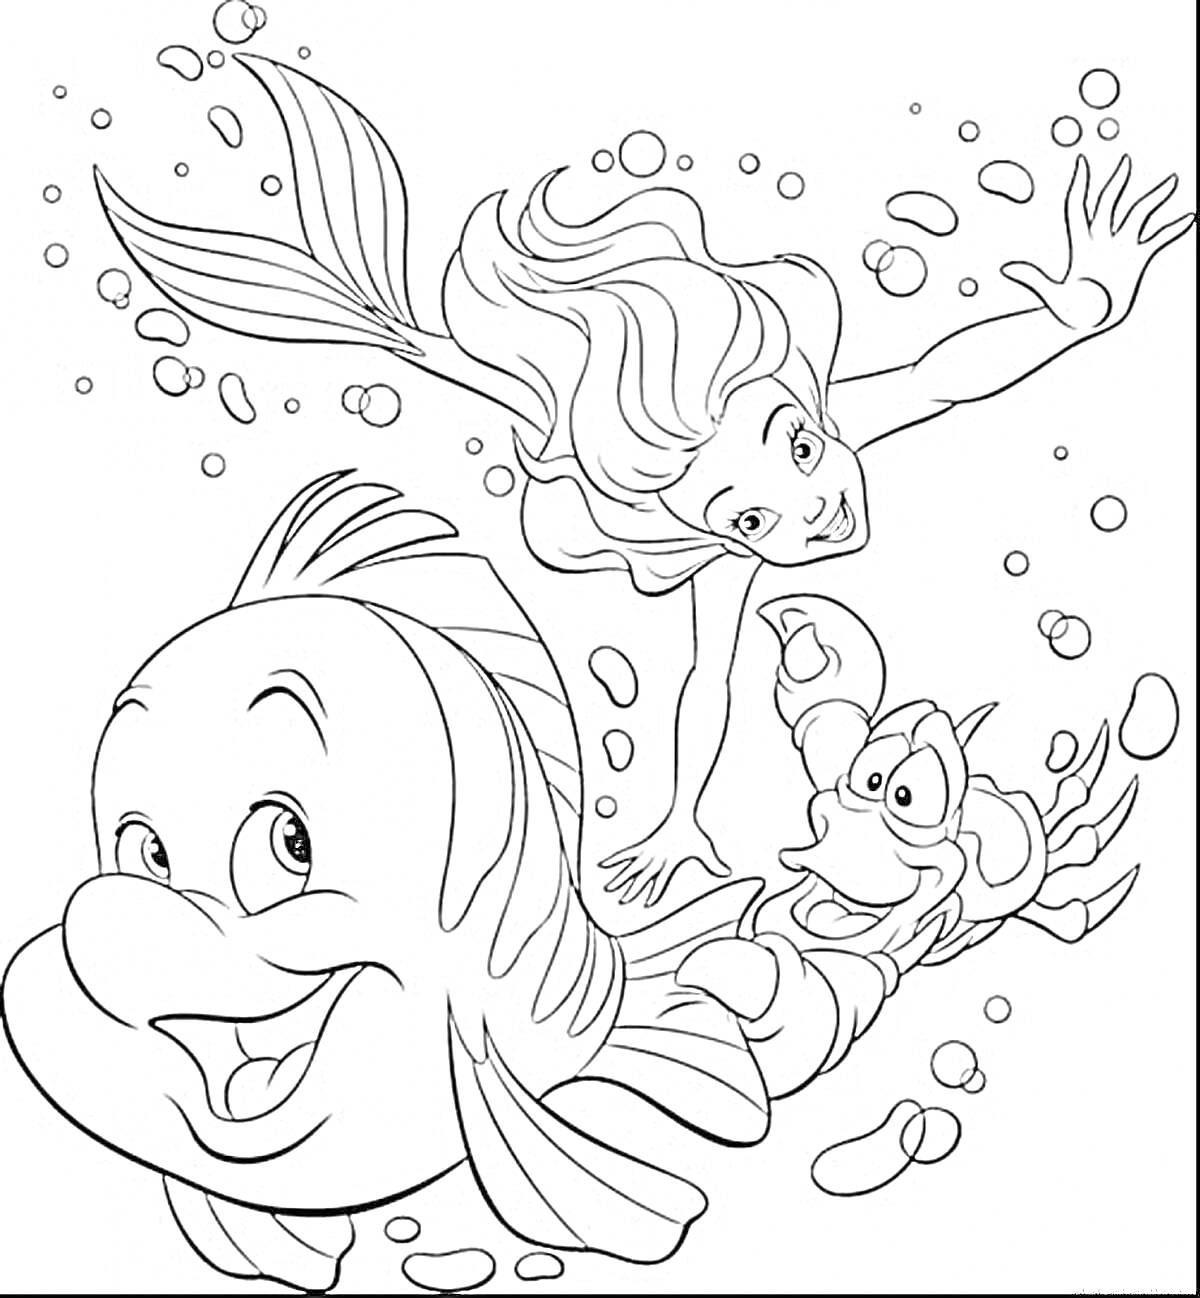 Раскраска Русалочка, рыба и краб под водой, окружённые пузырьками